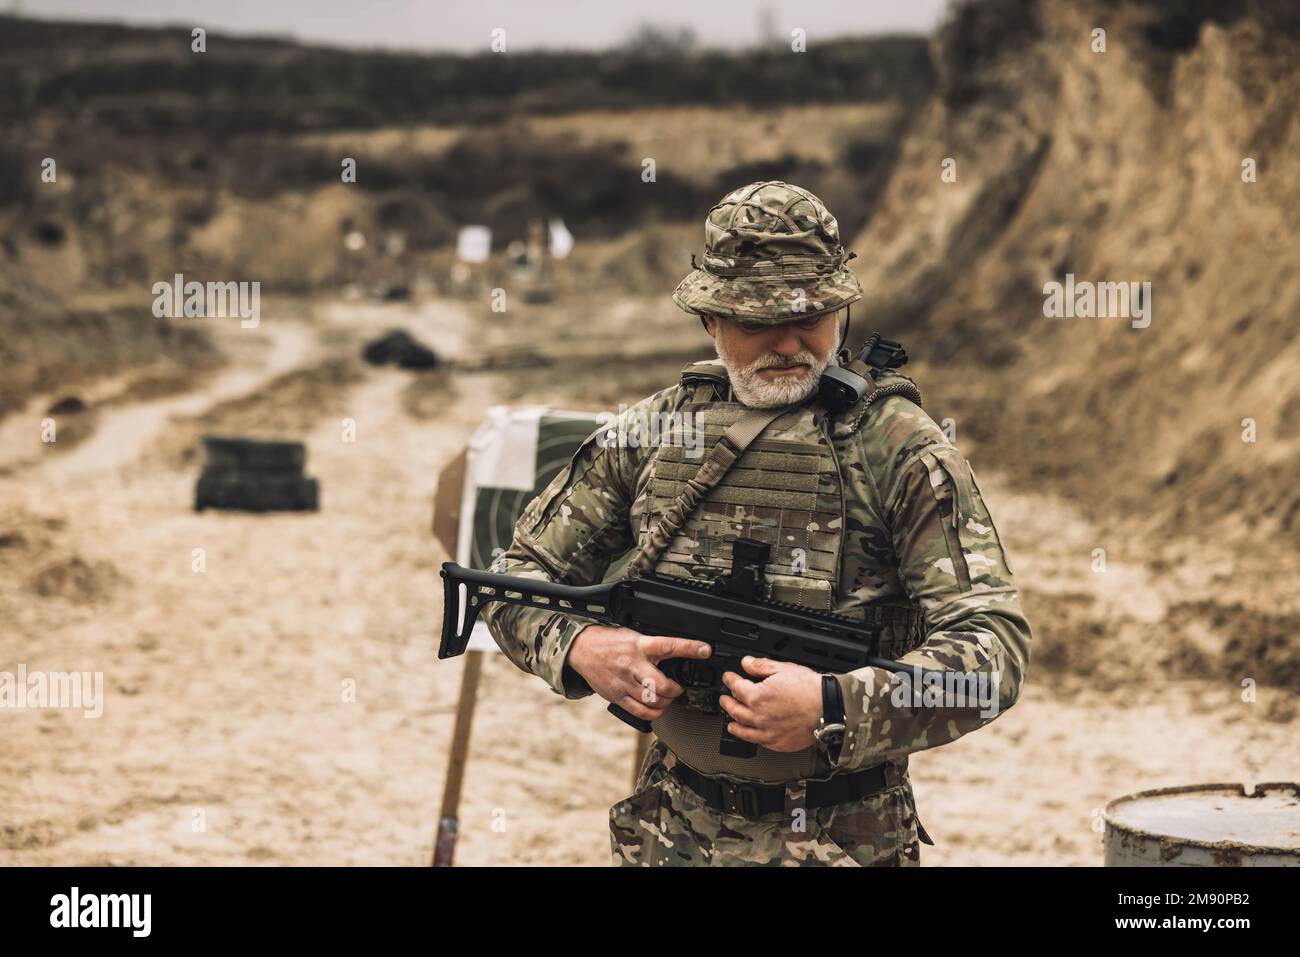 Soldat mûr avec un fusil dans les mains sur une portée de tir Banque D'Images